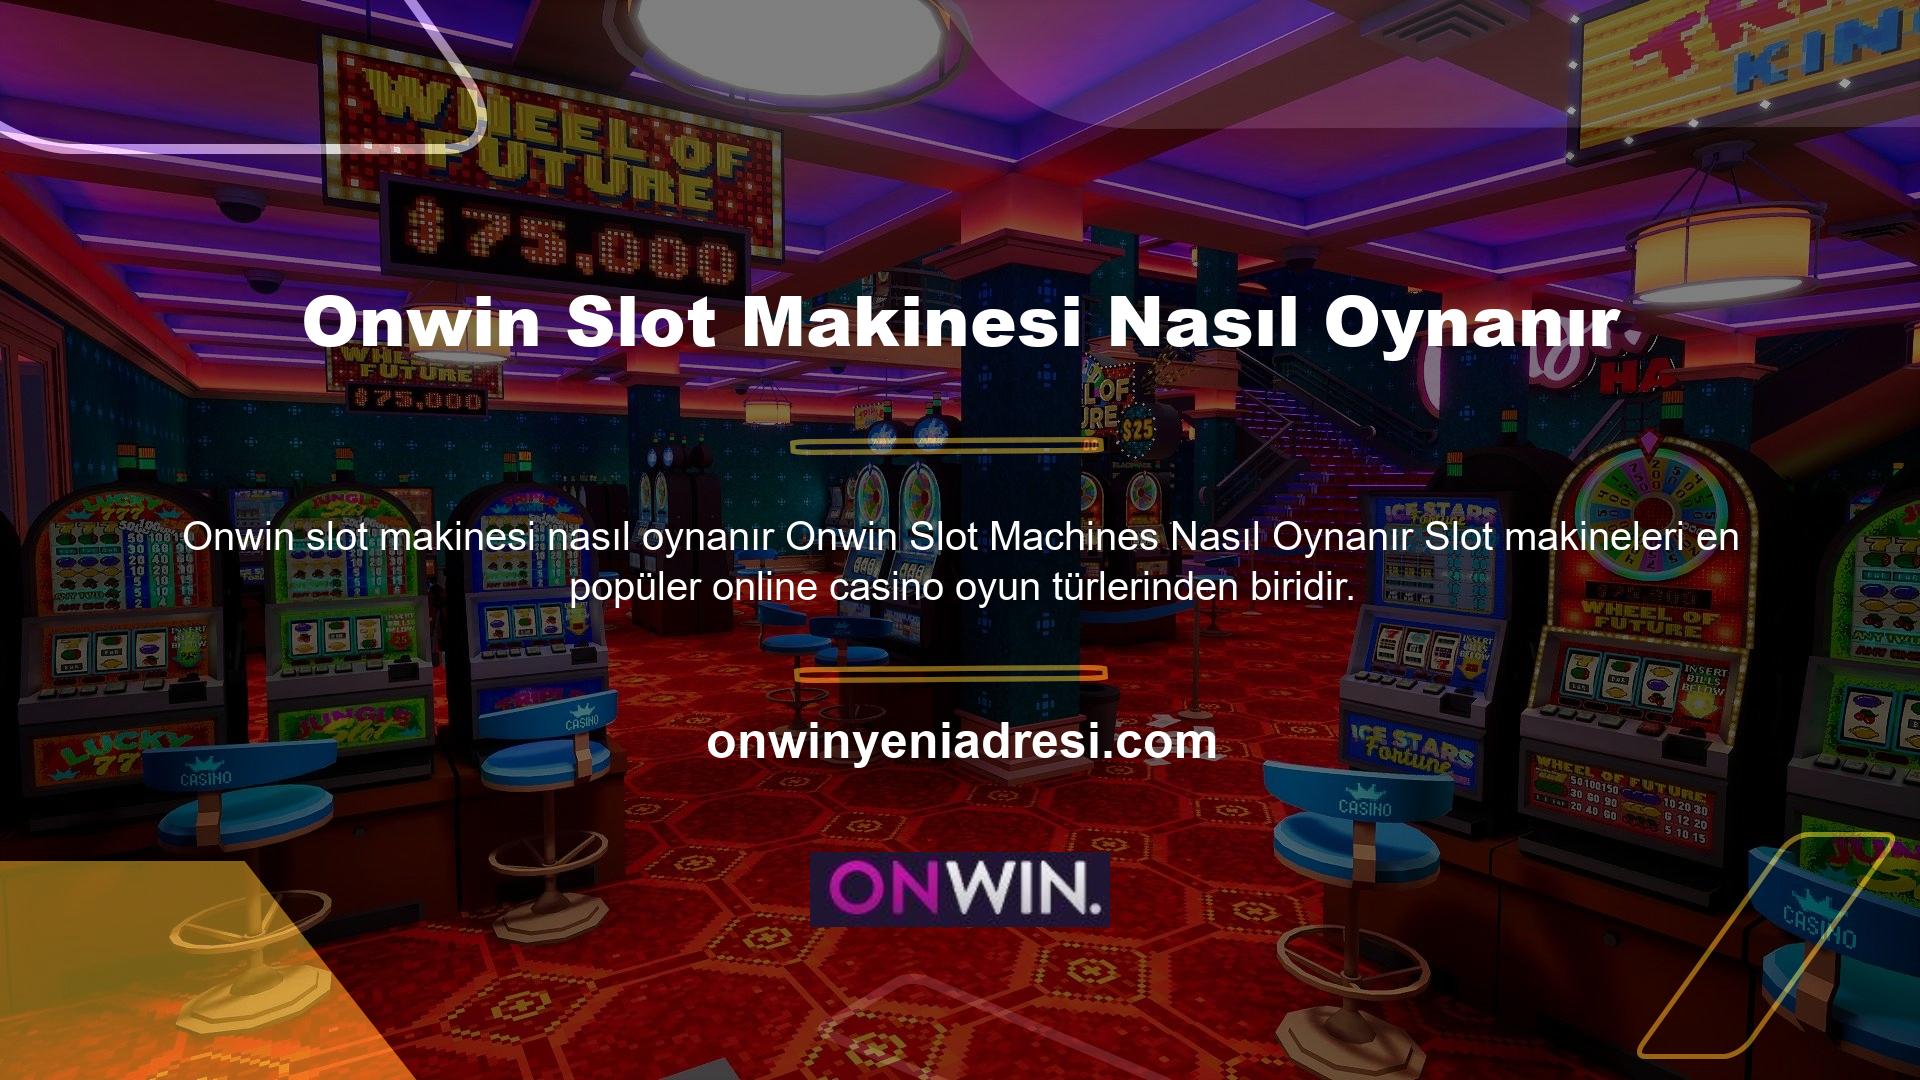 Oyun severler Onwin slot makinelerine katılarak en ünlü ve renkli casino oyunlarında hem eğlenebilir hem de para kazanabilirler